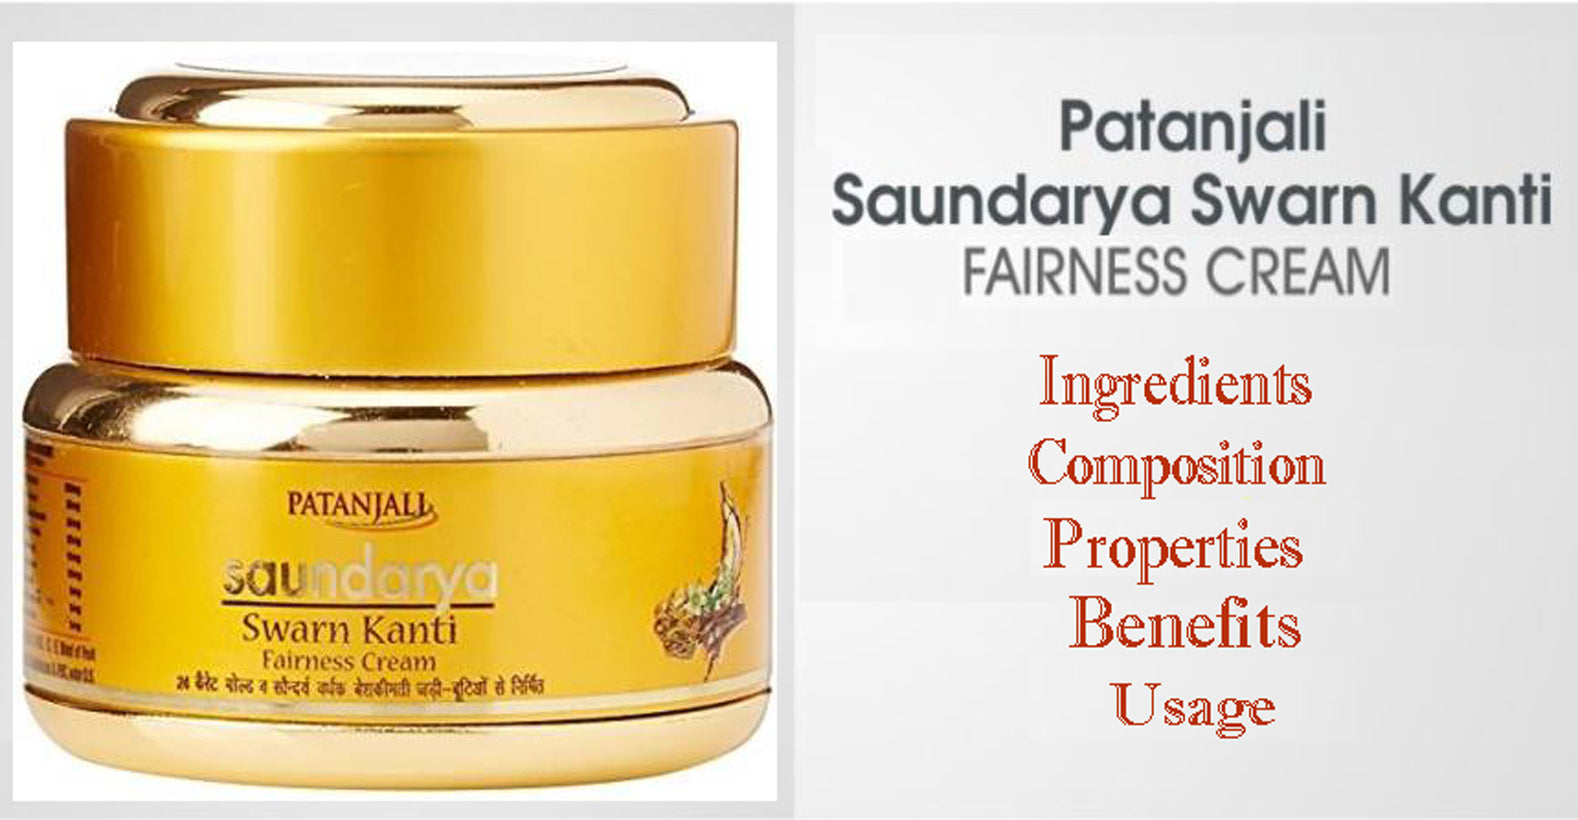 Patanjali Saundarya Swarna Kanti Fairness Cream - Ingredients, Composition, Properties, Benefits, Usage